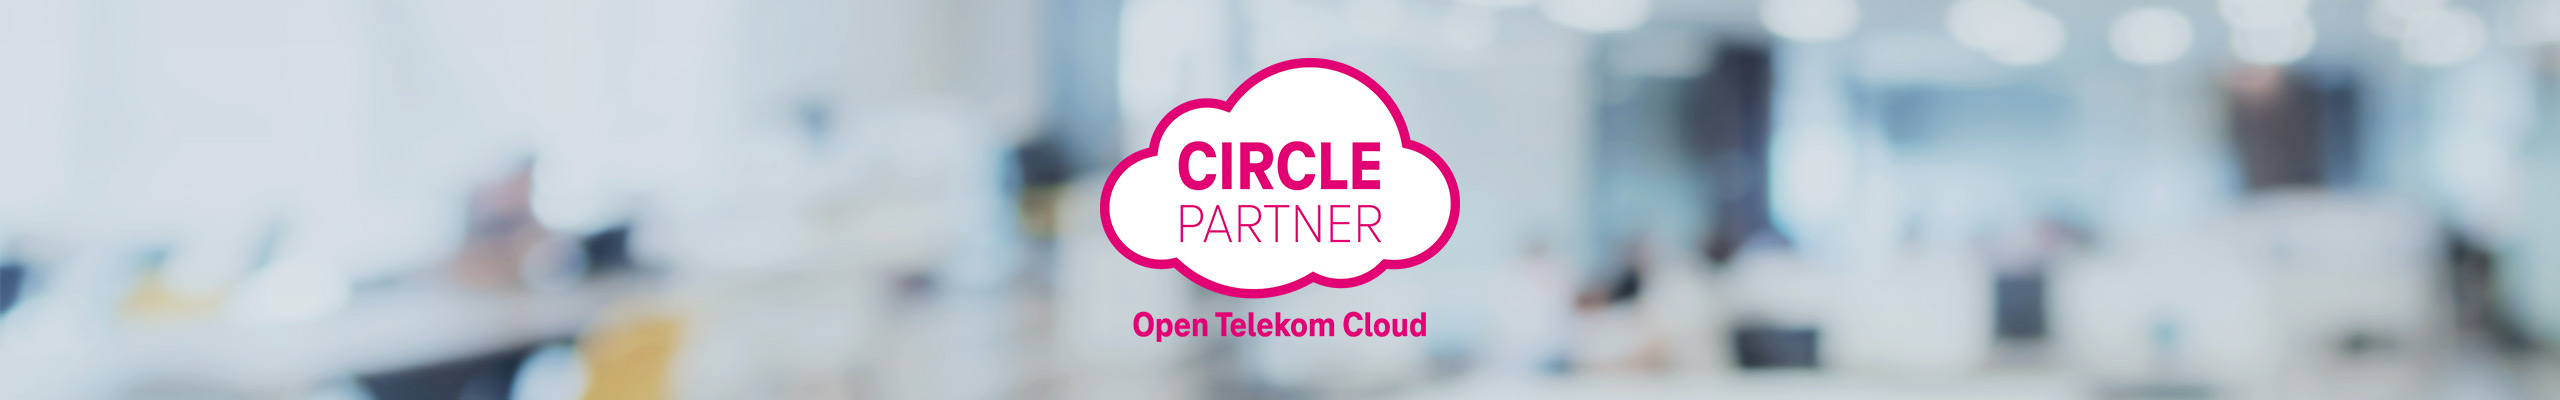 Open Telekom Cloud Circle Logo auf verschwommenen Hintergrund